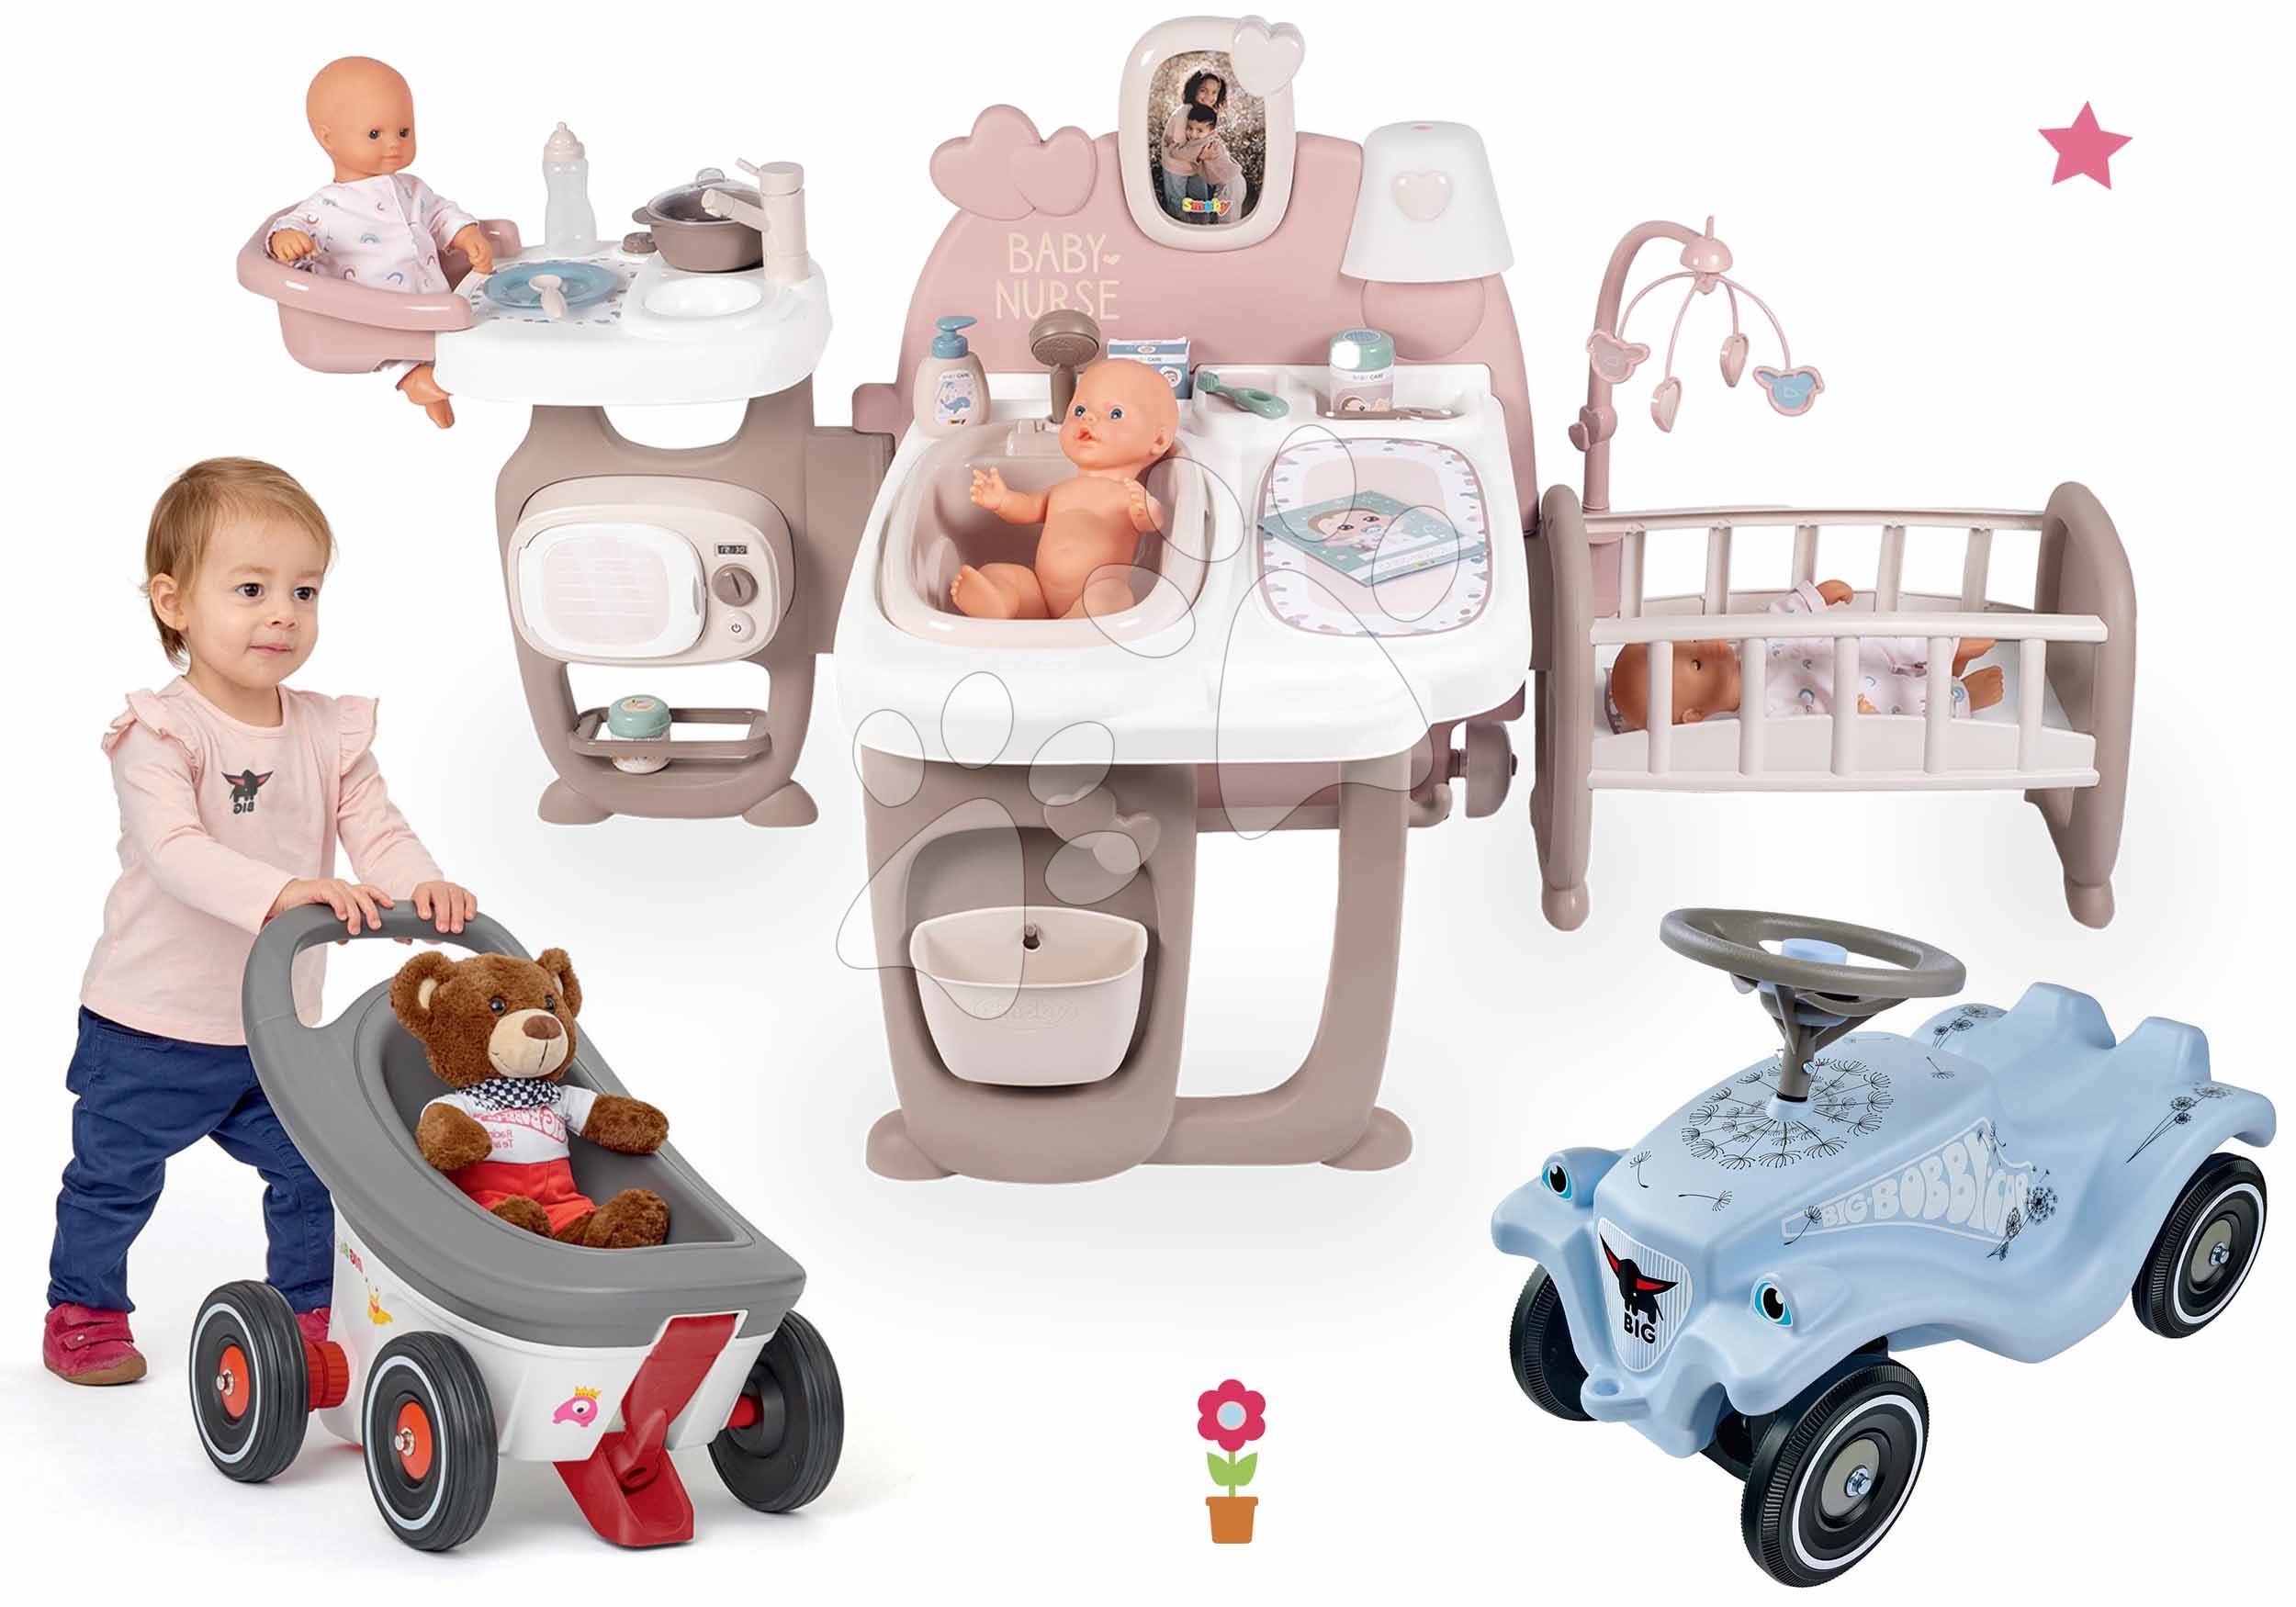 Kompleti za oskrbo punčk in dojenčkov - Komplet hišica za dojenčka Large Doll's Play Center Natur D'Amour Baby Nurse Smoby in poganjalec Blowball s sprehajalčkom in vozičkom 3v1